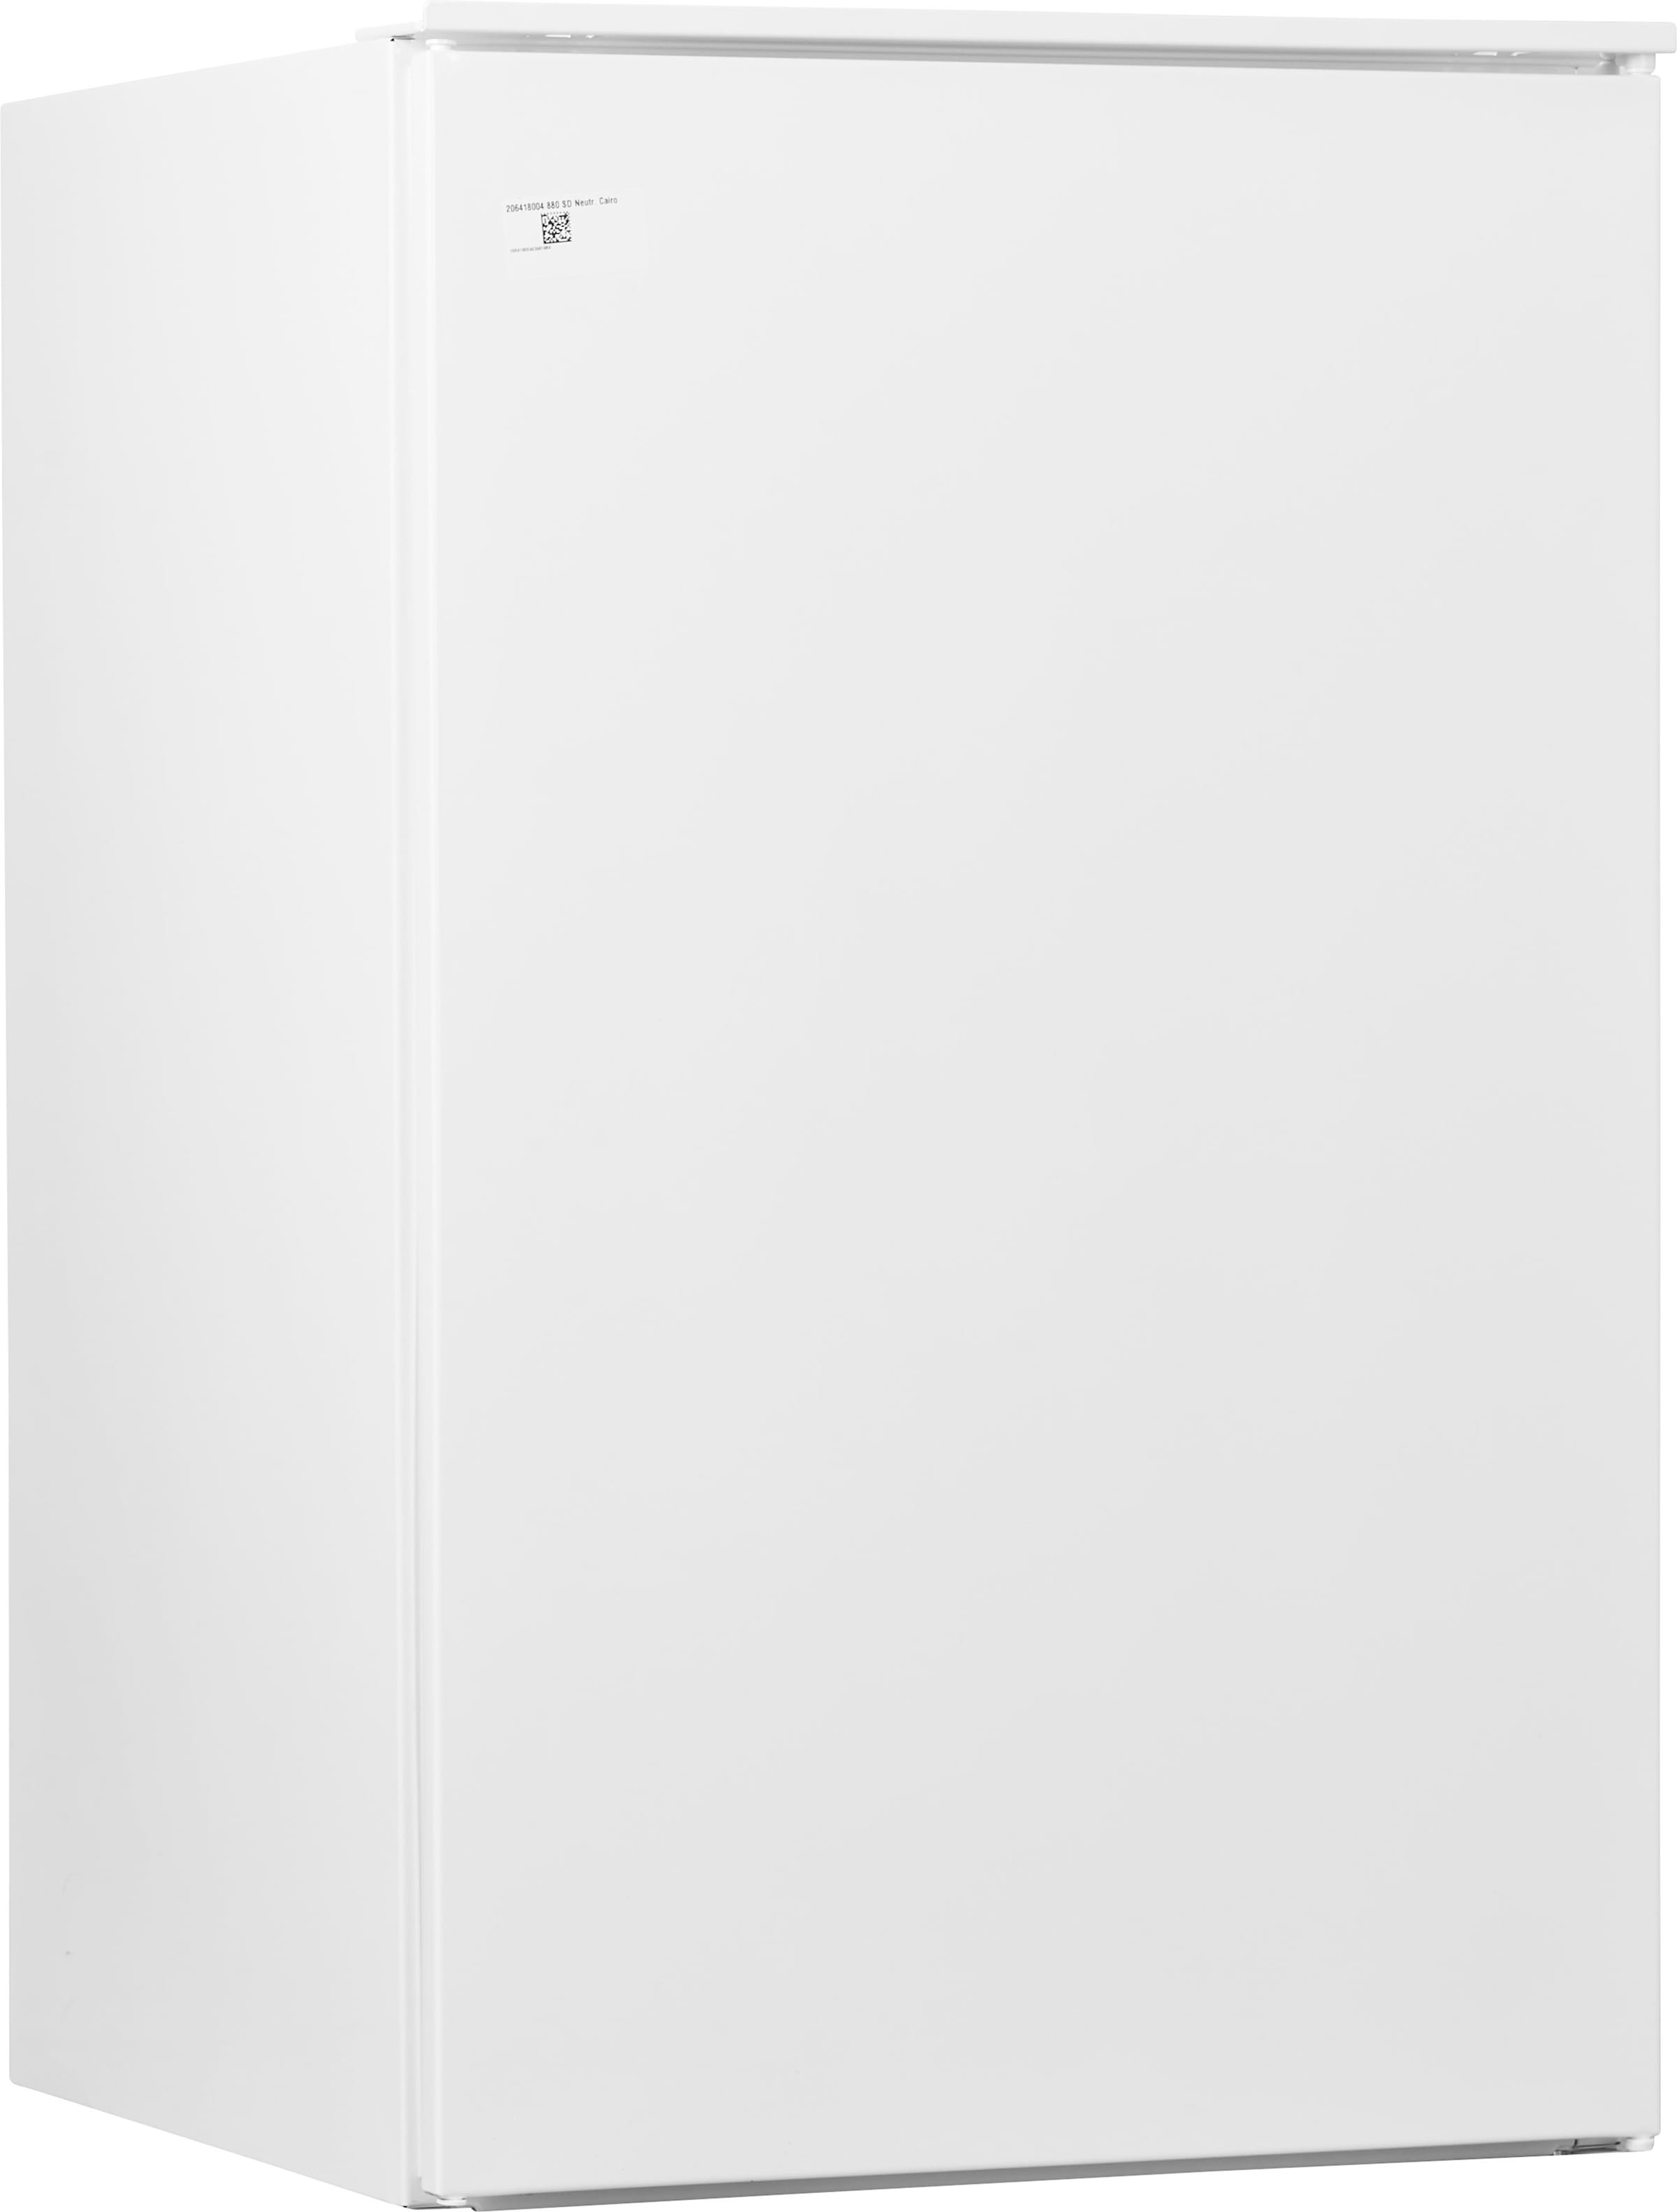 AEG Einbaukühlschrank / 880 mm / 142 L / Dekorfähig Weiß Einbaukühlschrank  (E, 88,1 cm hoch, Weiß)